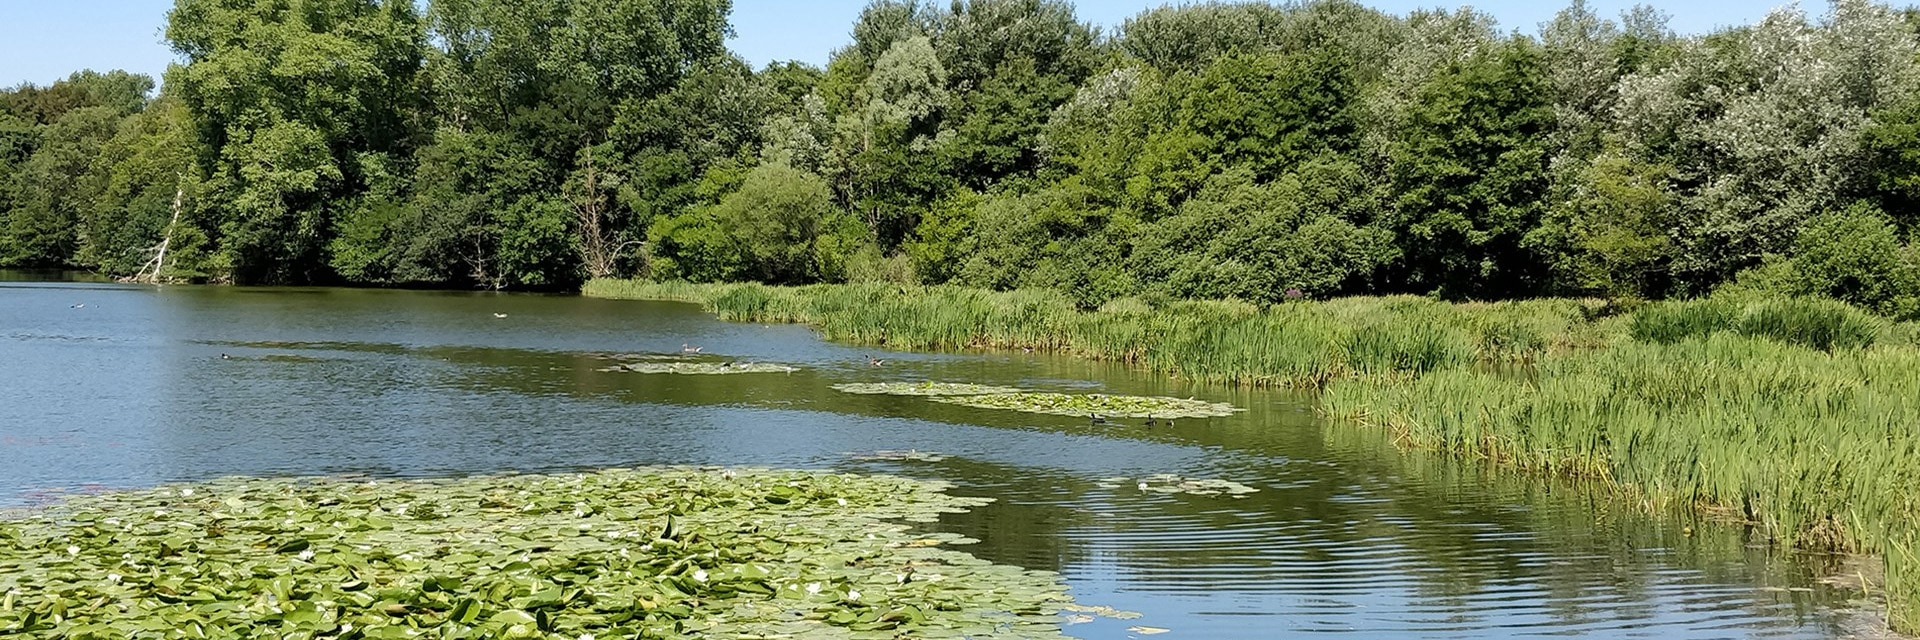 Een meer met vogels en veel groen